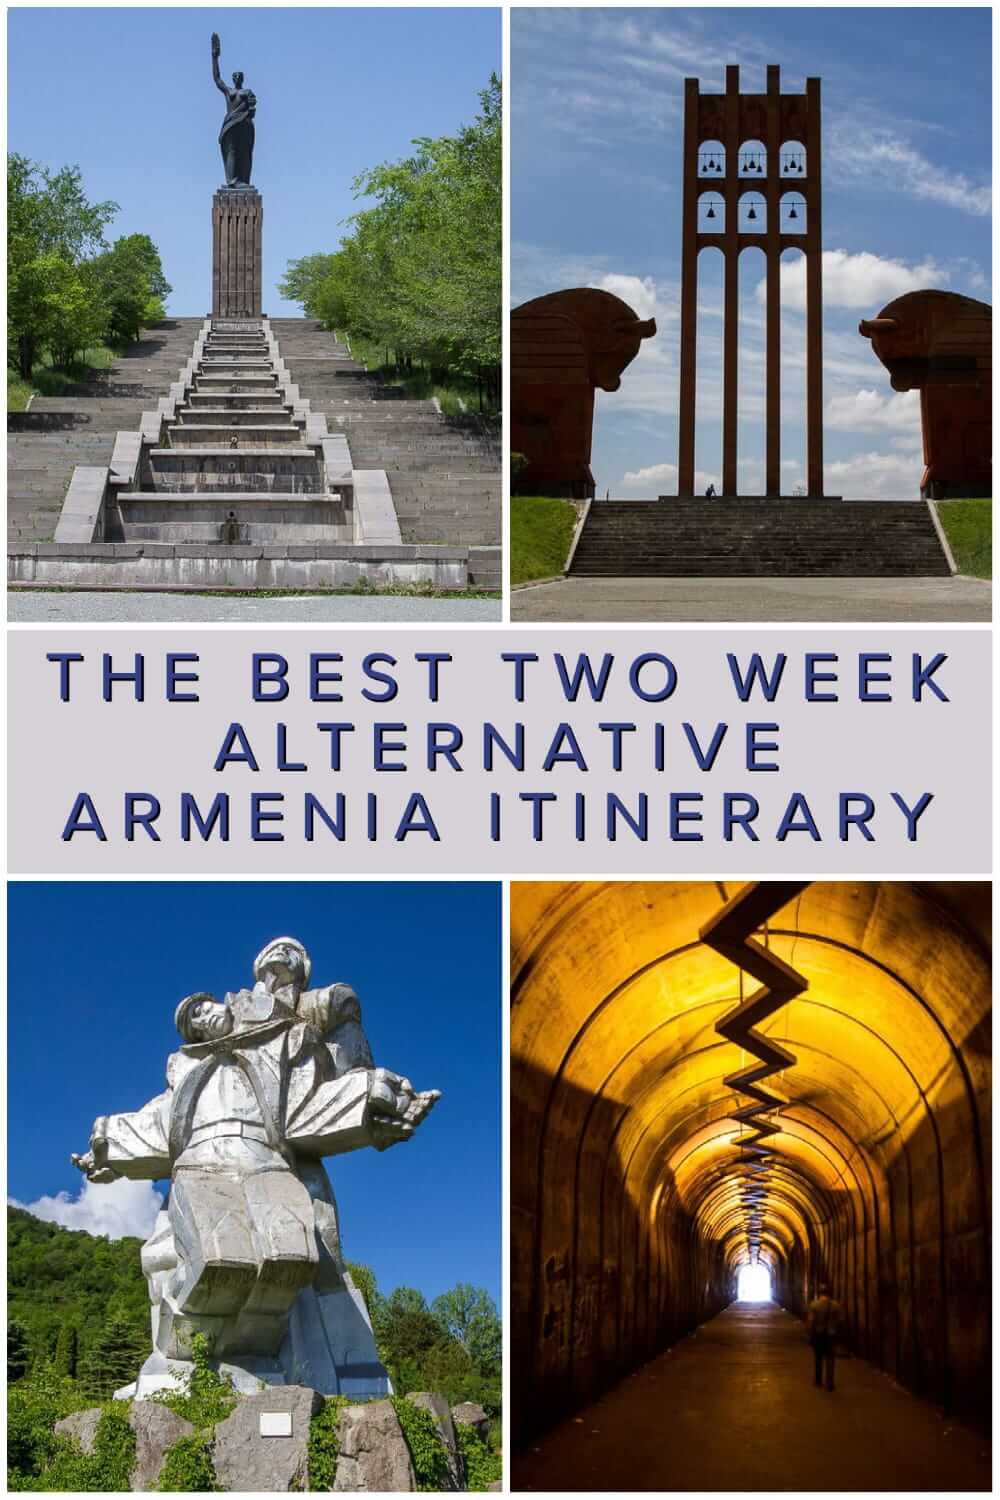 亚美尼亚行程-两周内在亚美尼亚能看到什么#另类#旅行#背包旅行#高加索#旅行计划